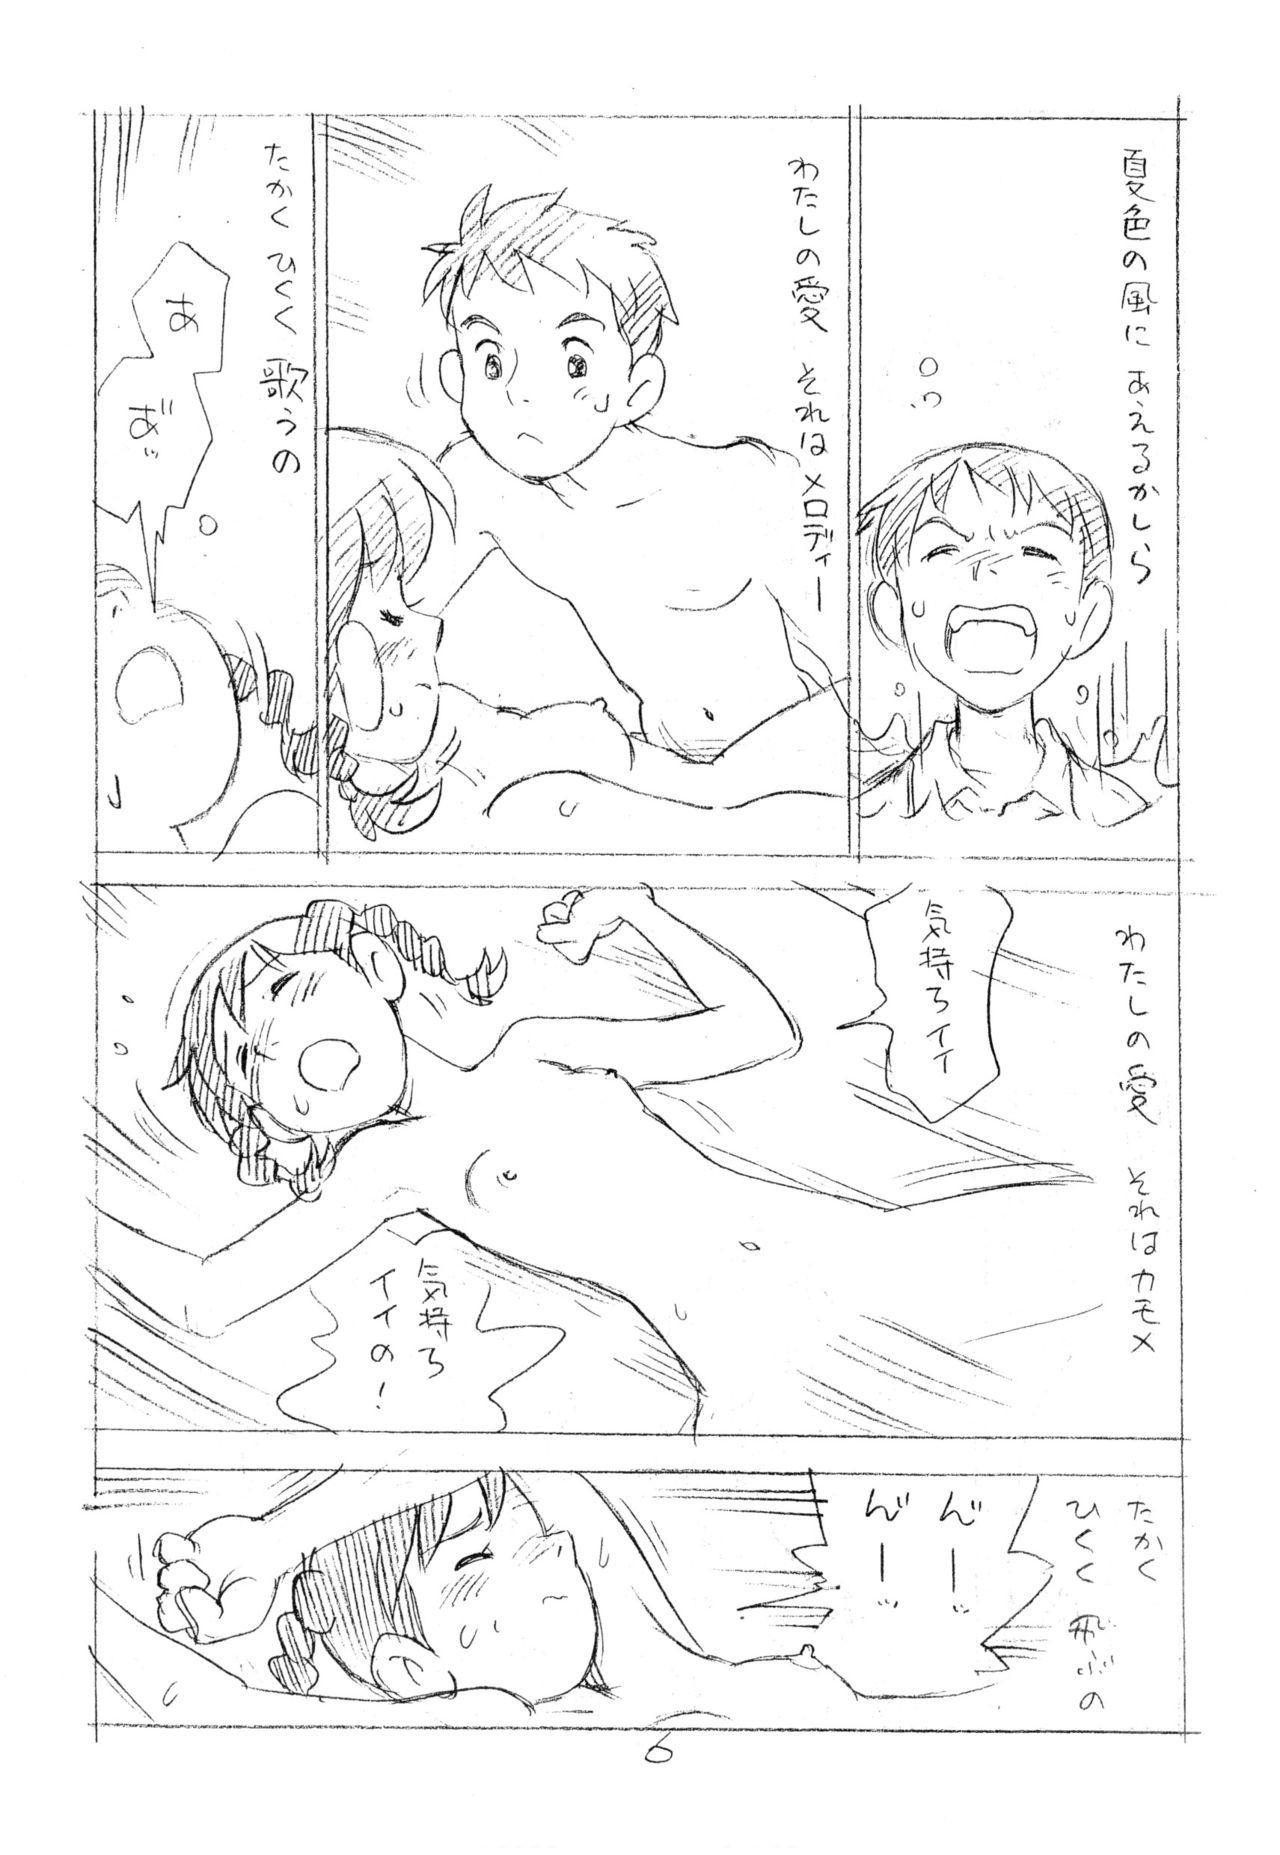 Best Ashita ga Arusa. Enpitsu Kaki Eromanga 2012 Natsu Titten - Page 5